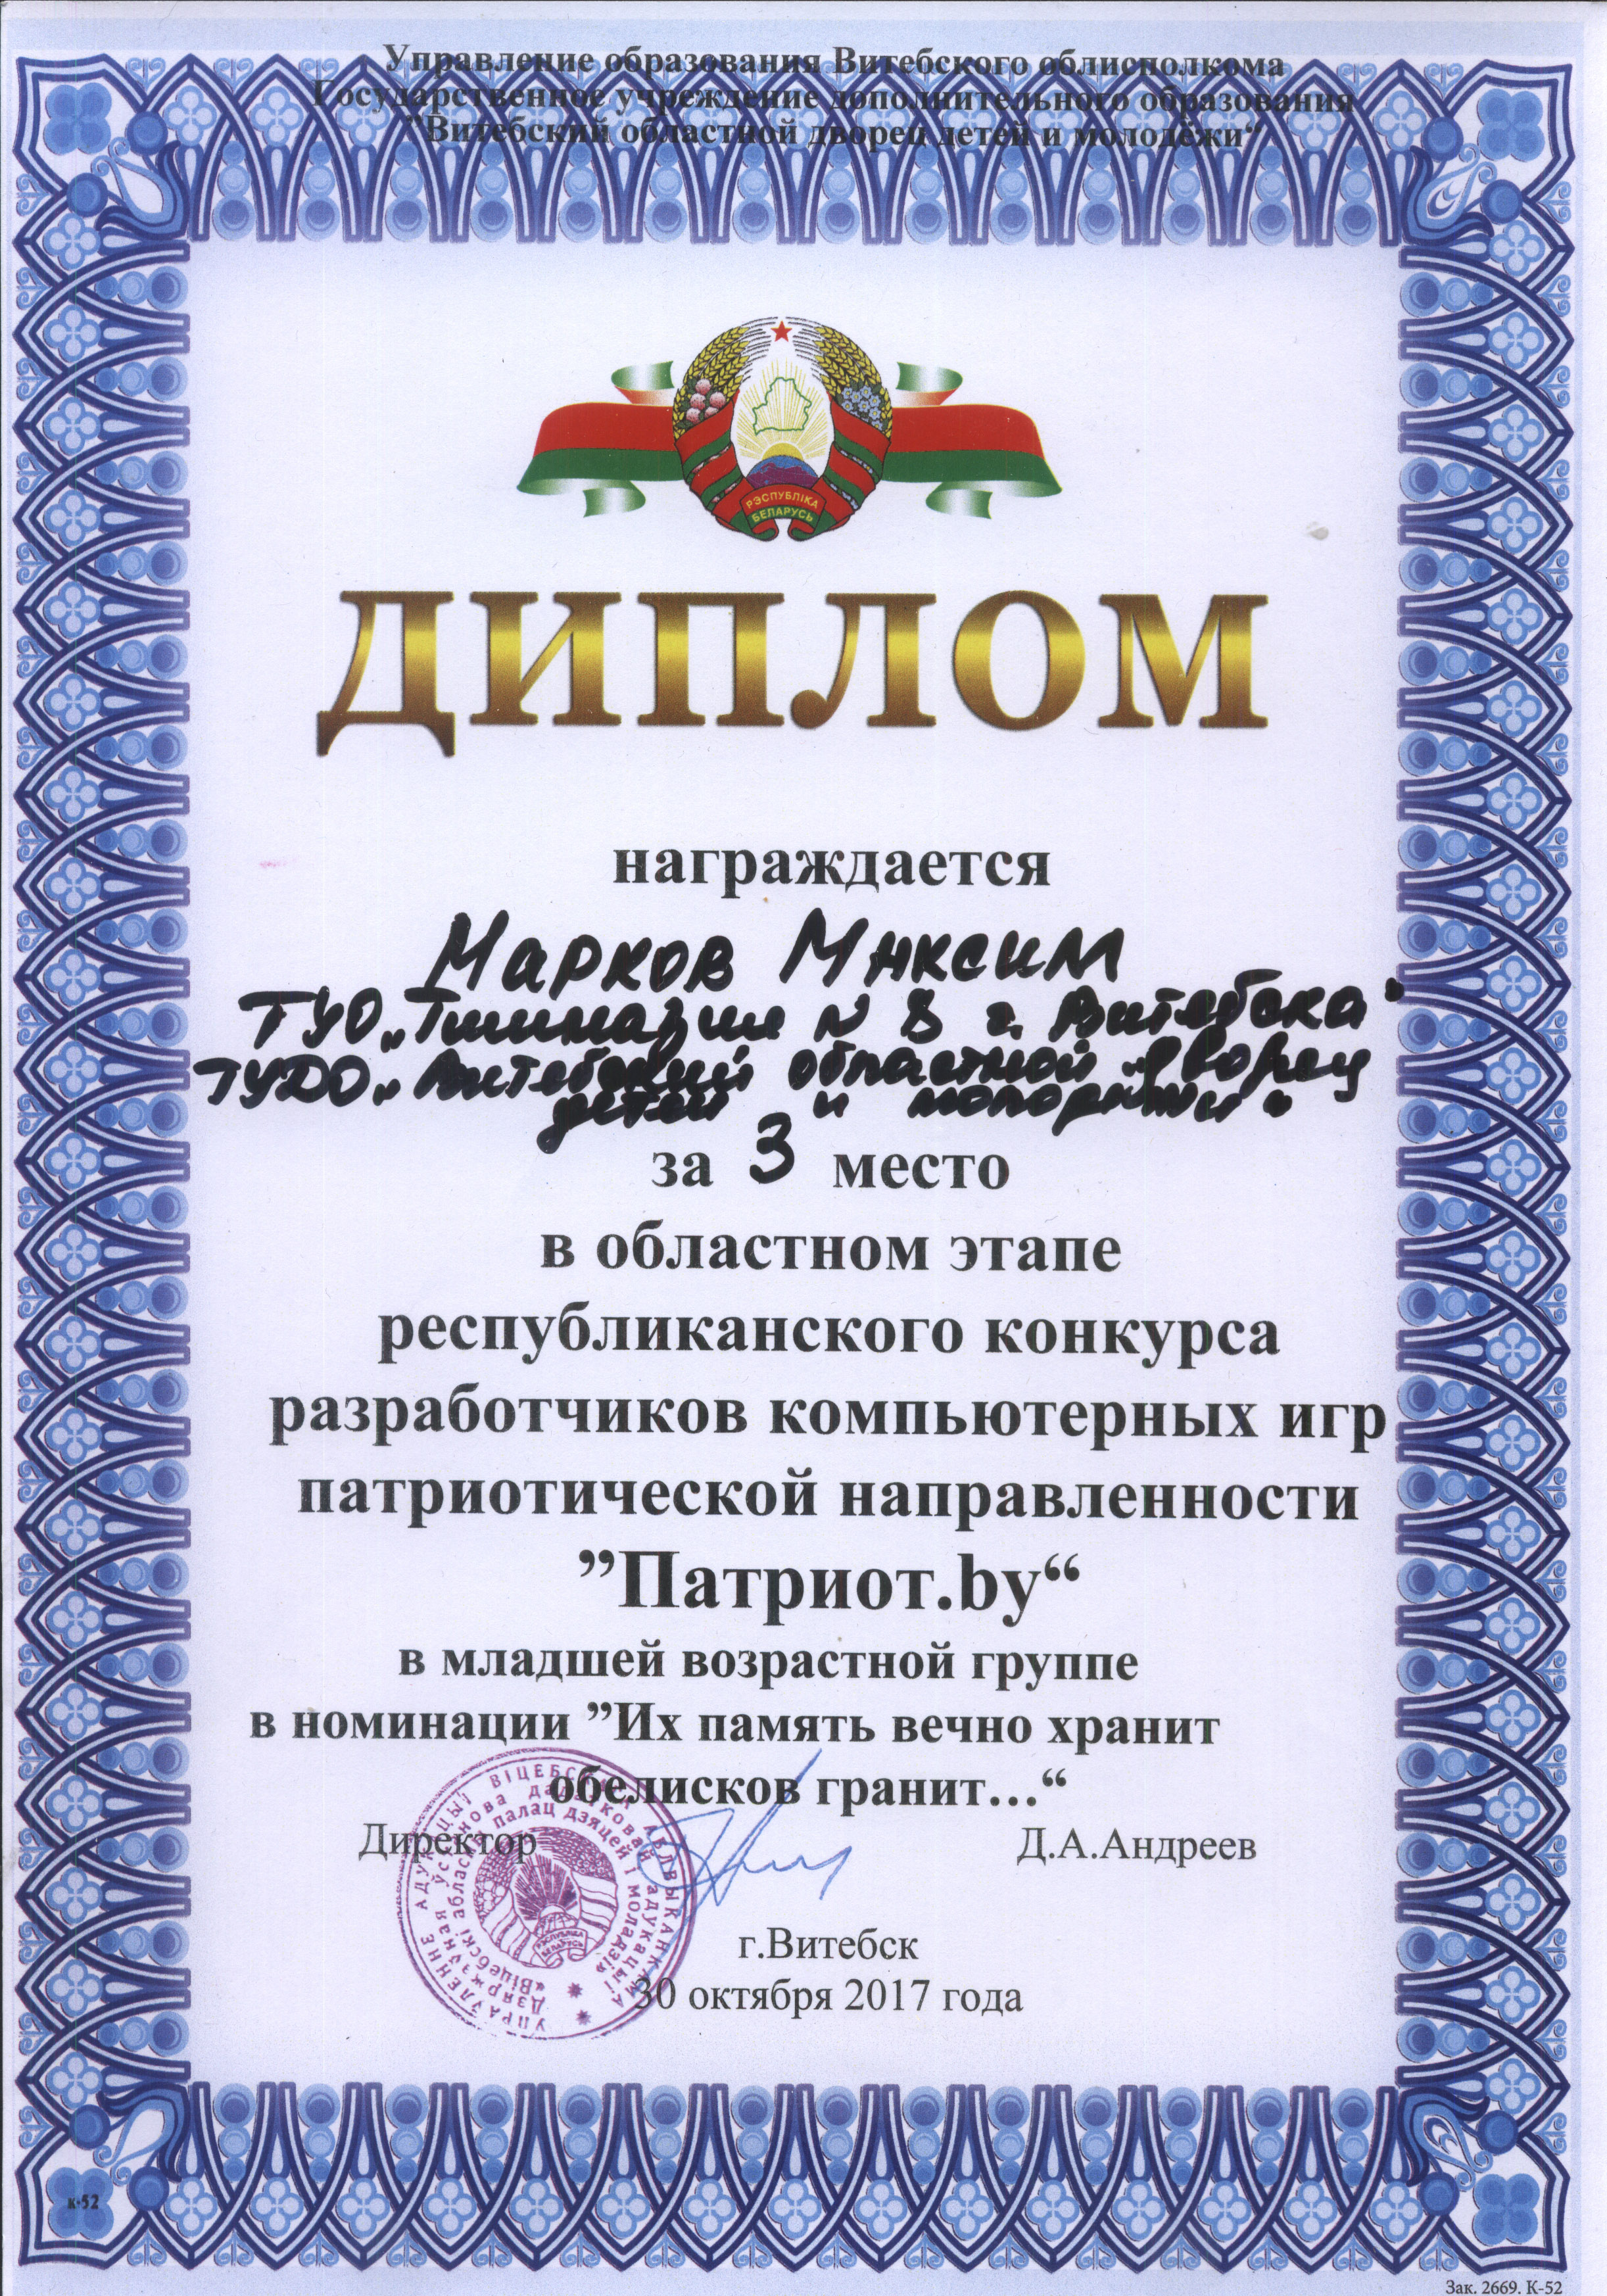 Diplom Markov Patriot obl 2017